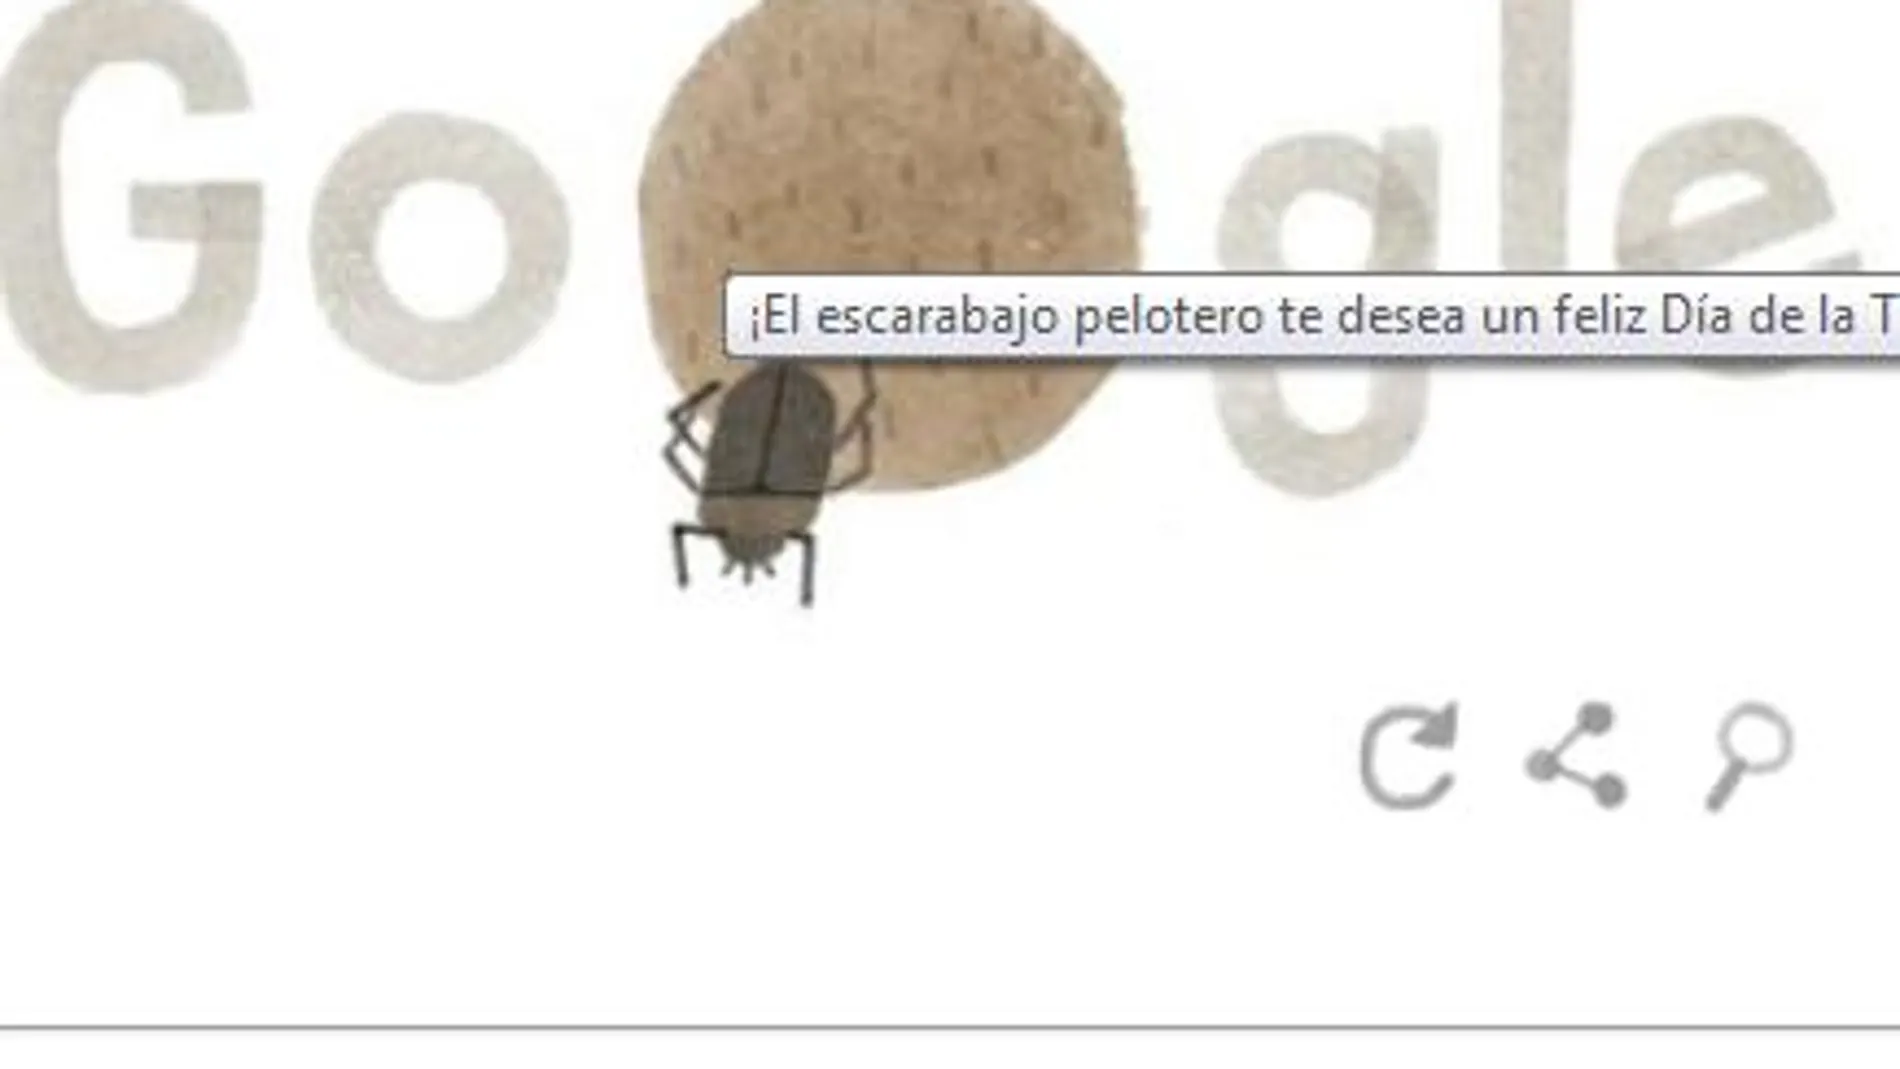 El escarabajo pelotero, en el doodle de google